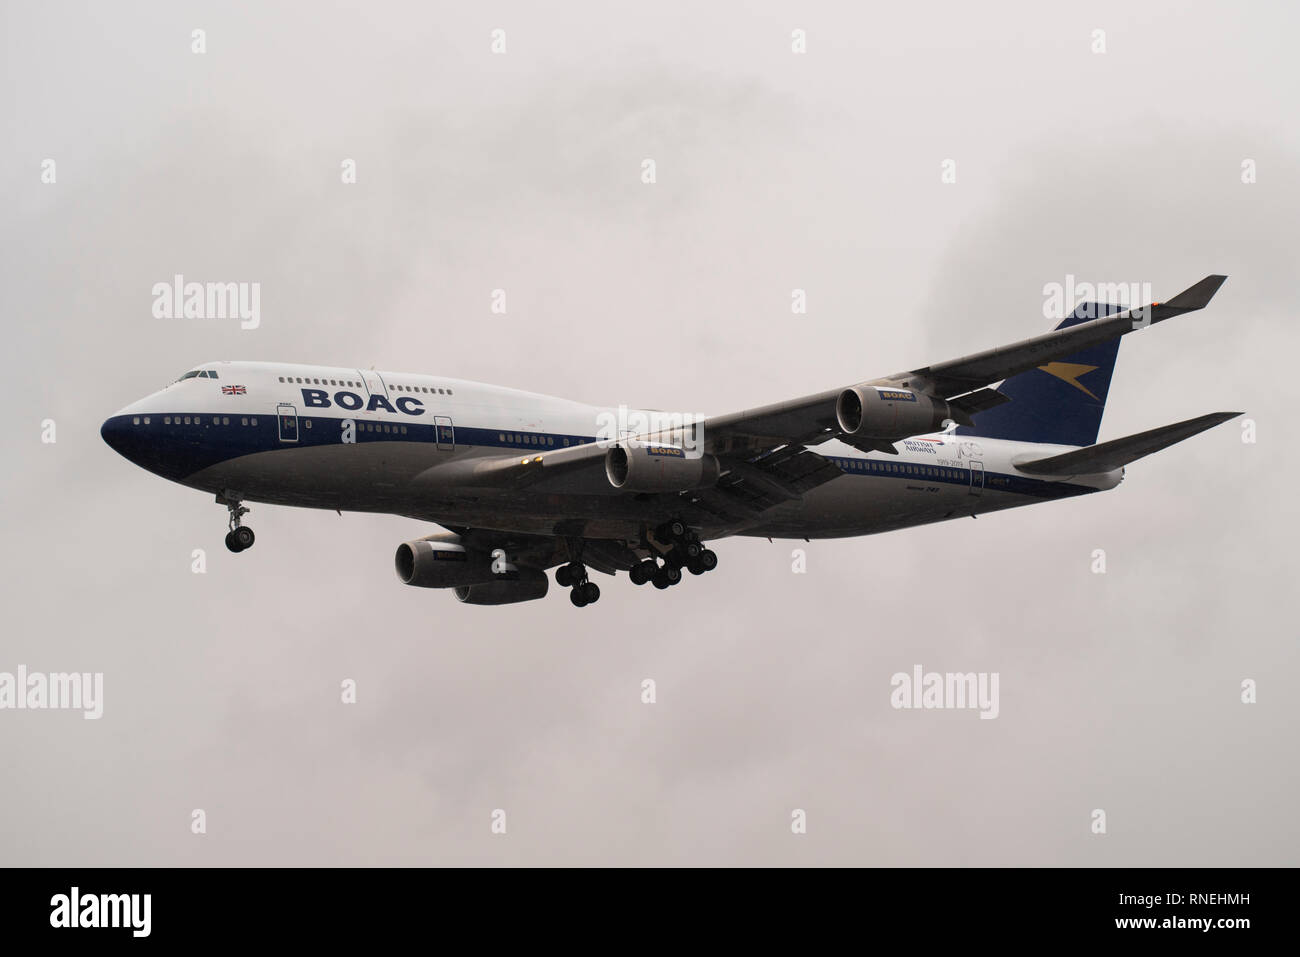 British Airways Boeing 747 jumbo getto G-BYGC in atterraggio a Heathrow in heavy rain aver volato da Dublino dove era stata dipinta in retrò colori BOAC Foto Stock